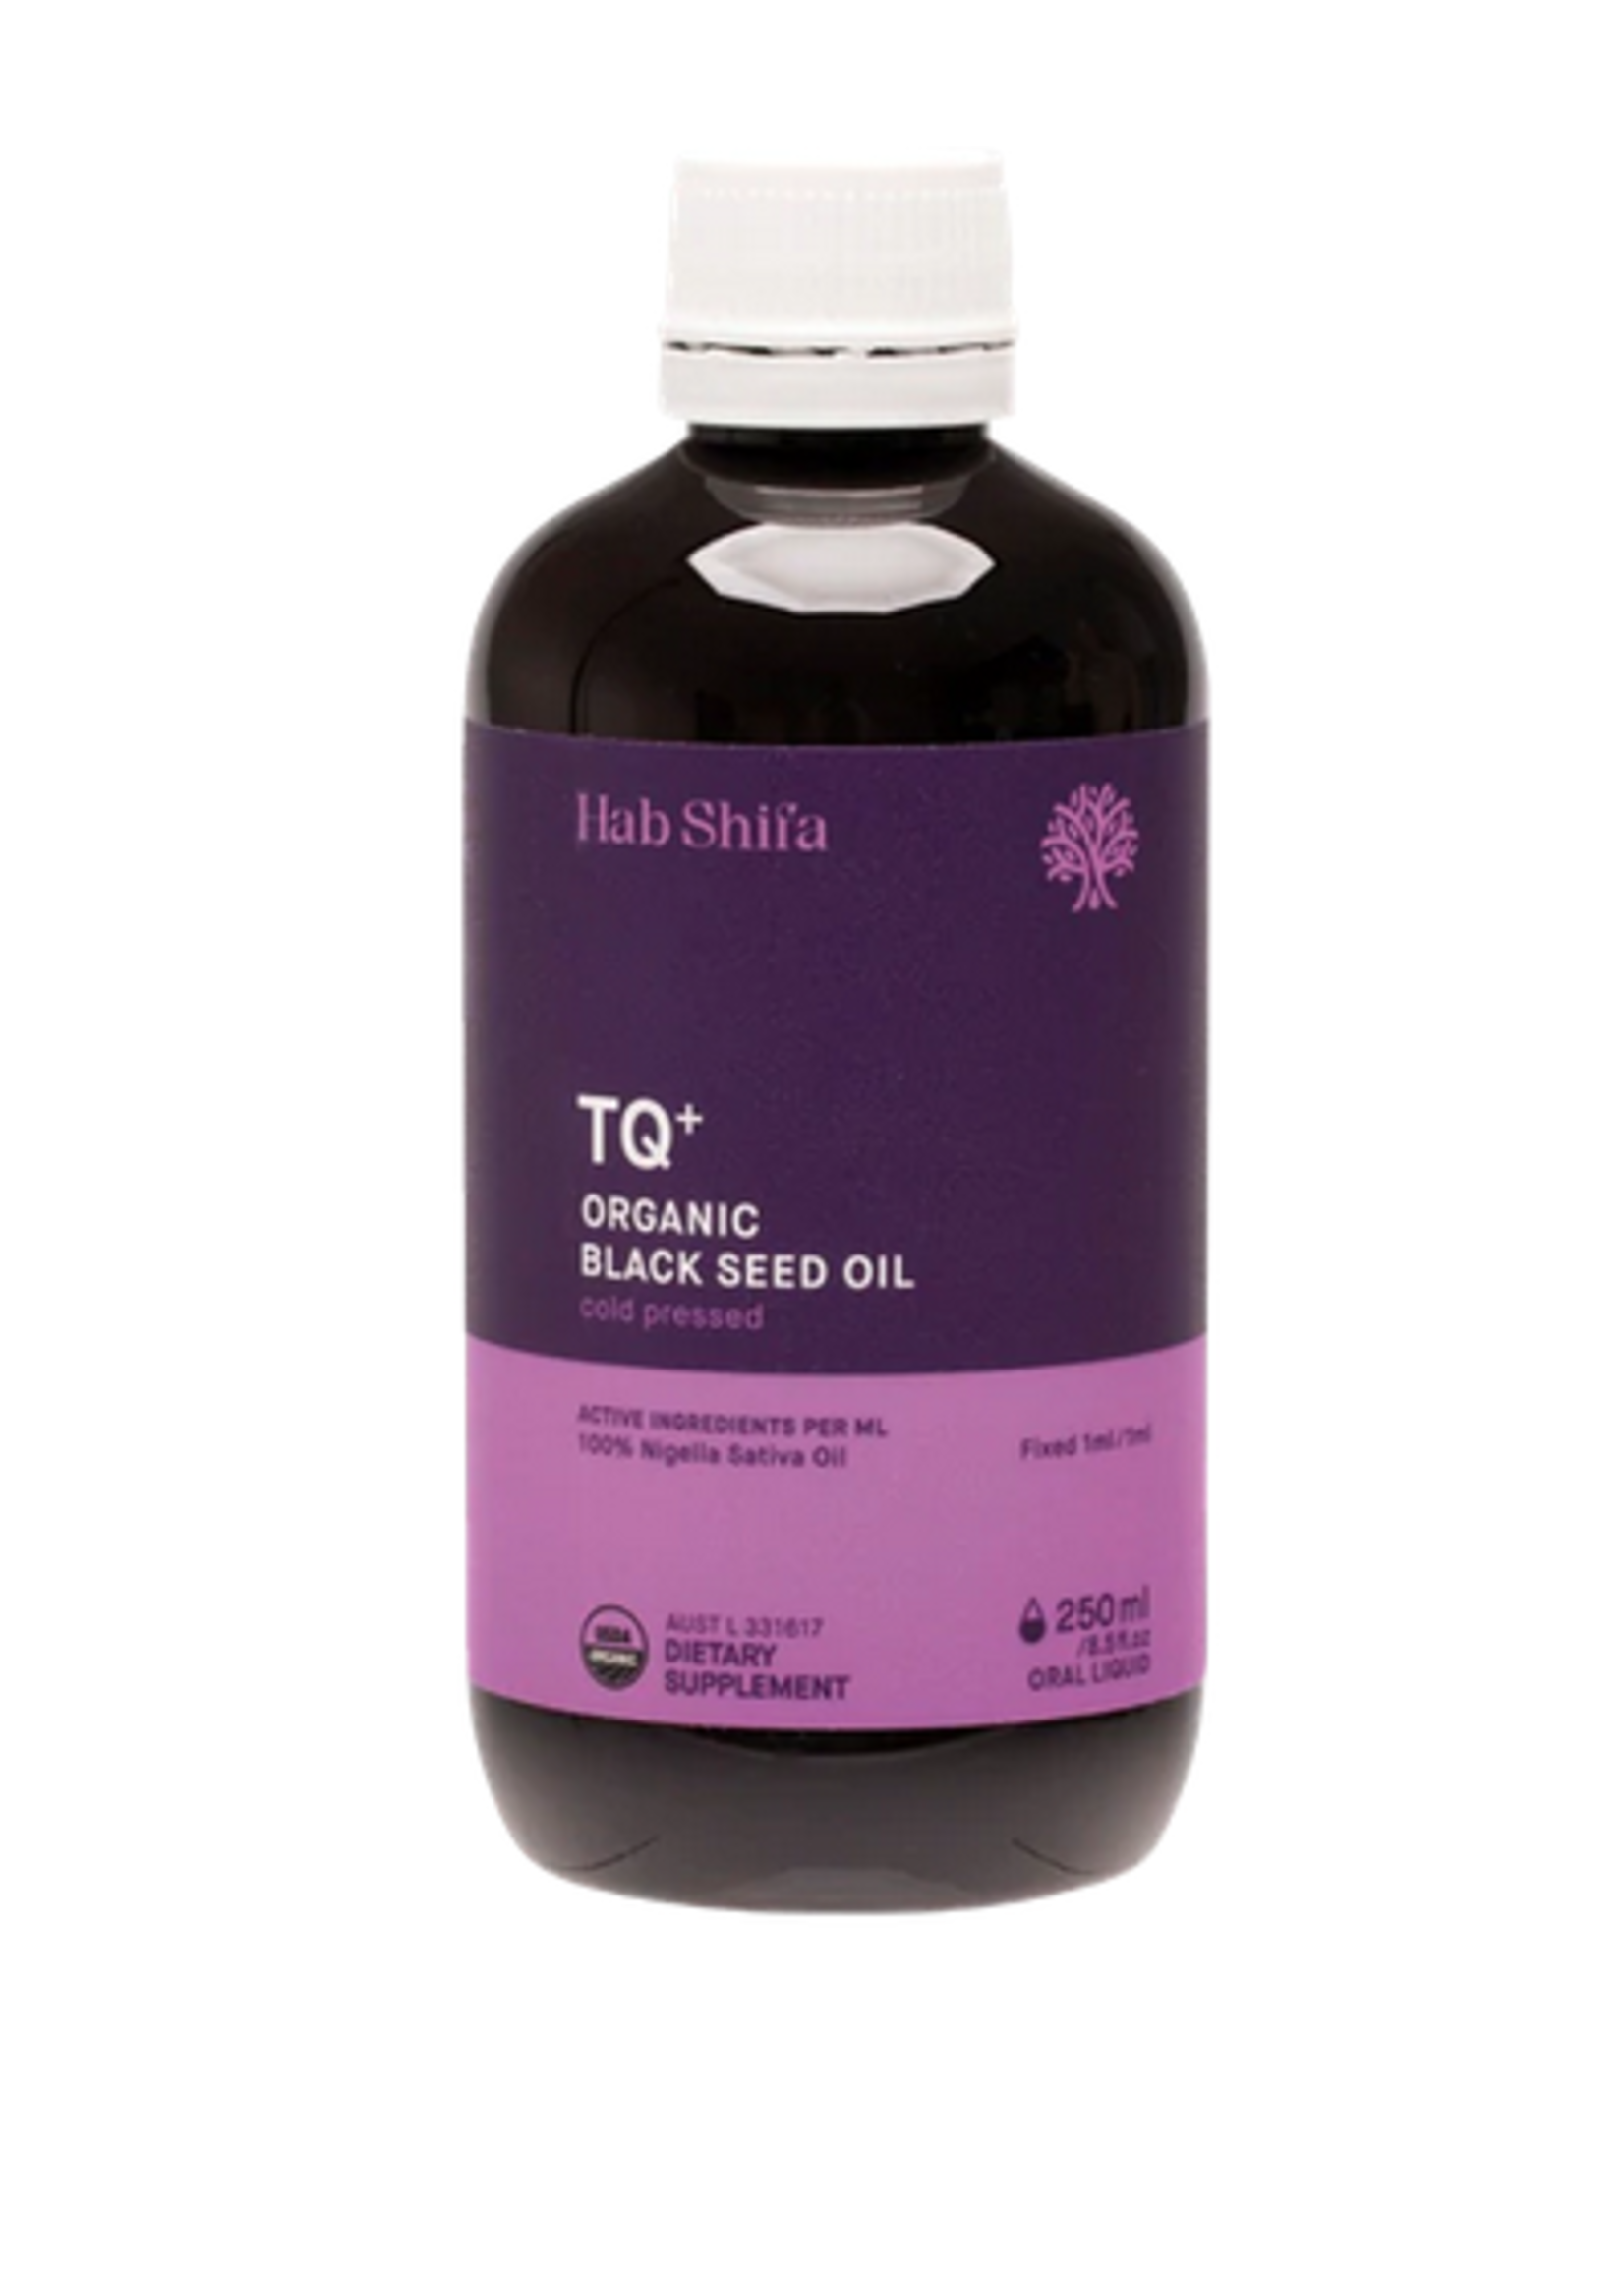 HAB SHIFA Hab Shifa TQ+ Black Seed Oil 250mls